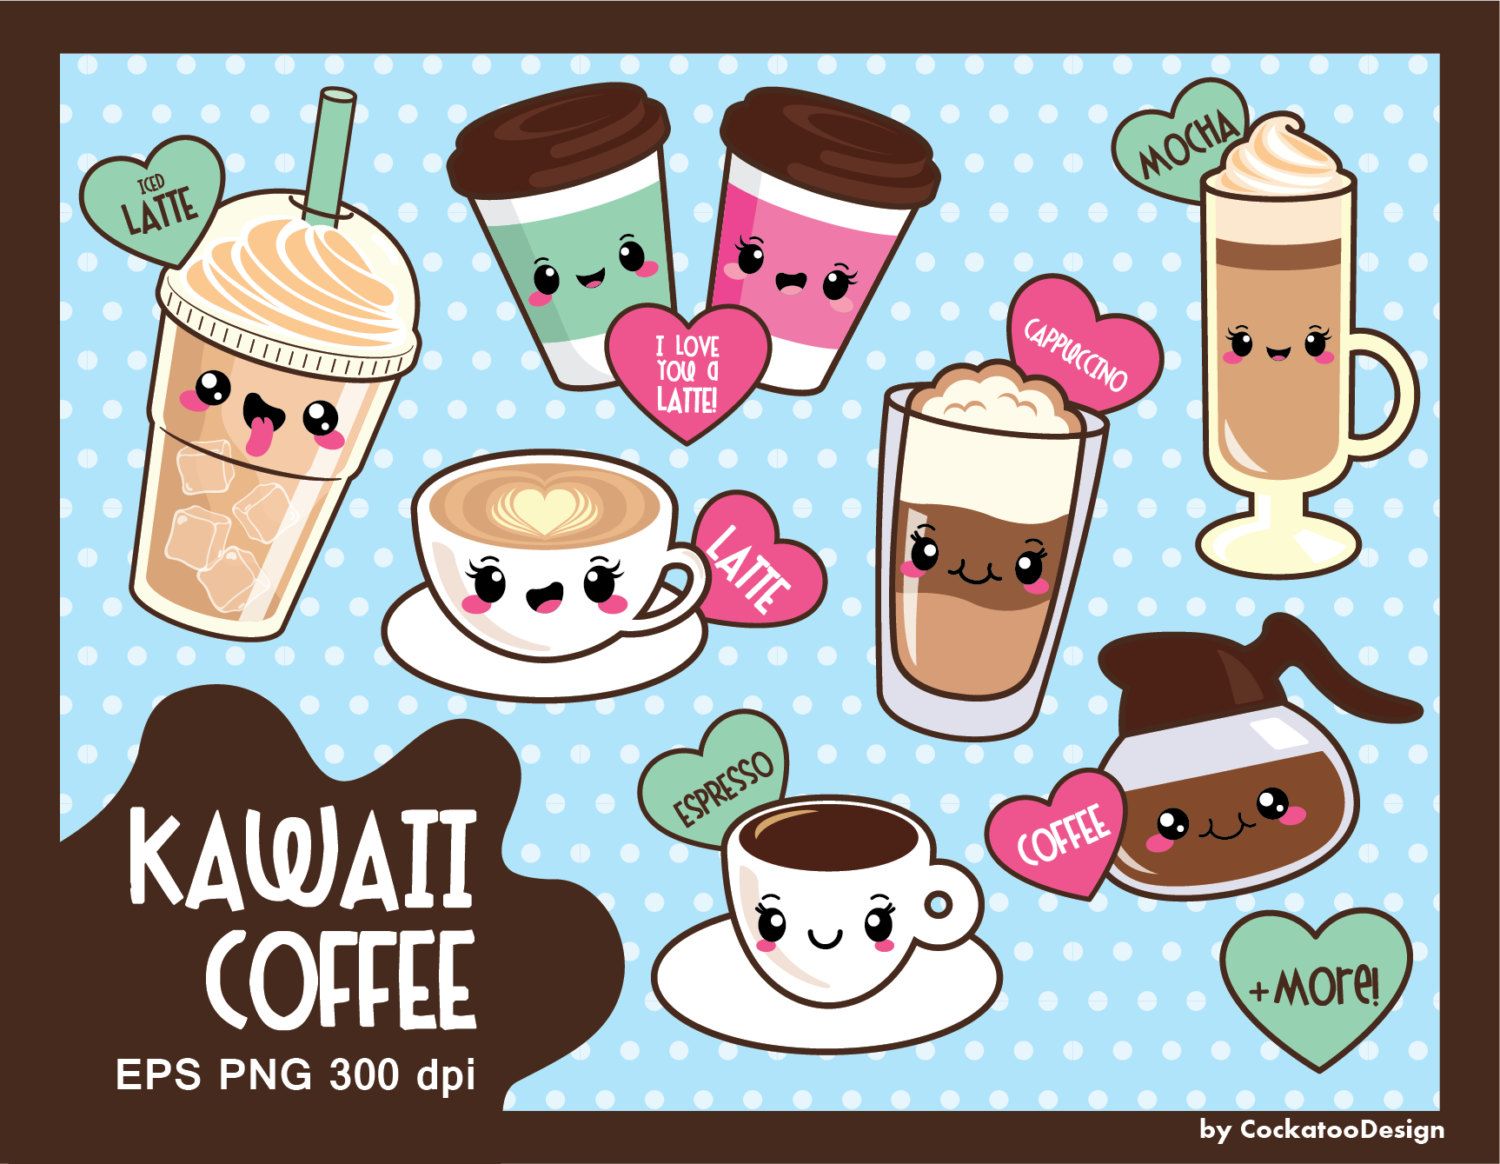 Coffee clipart, kawaii coffee clipart, cute coffee clipart